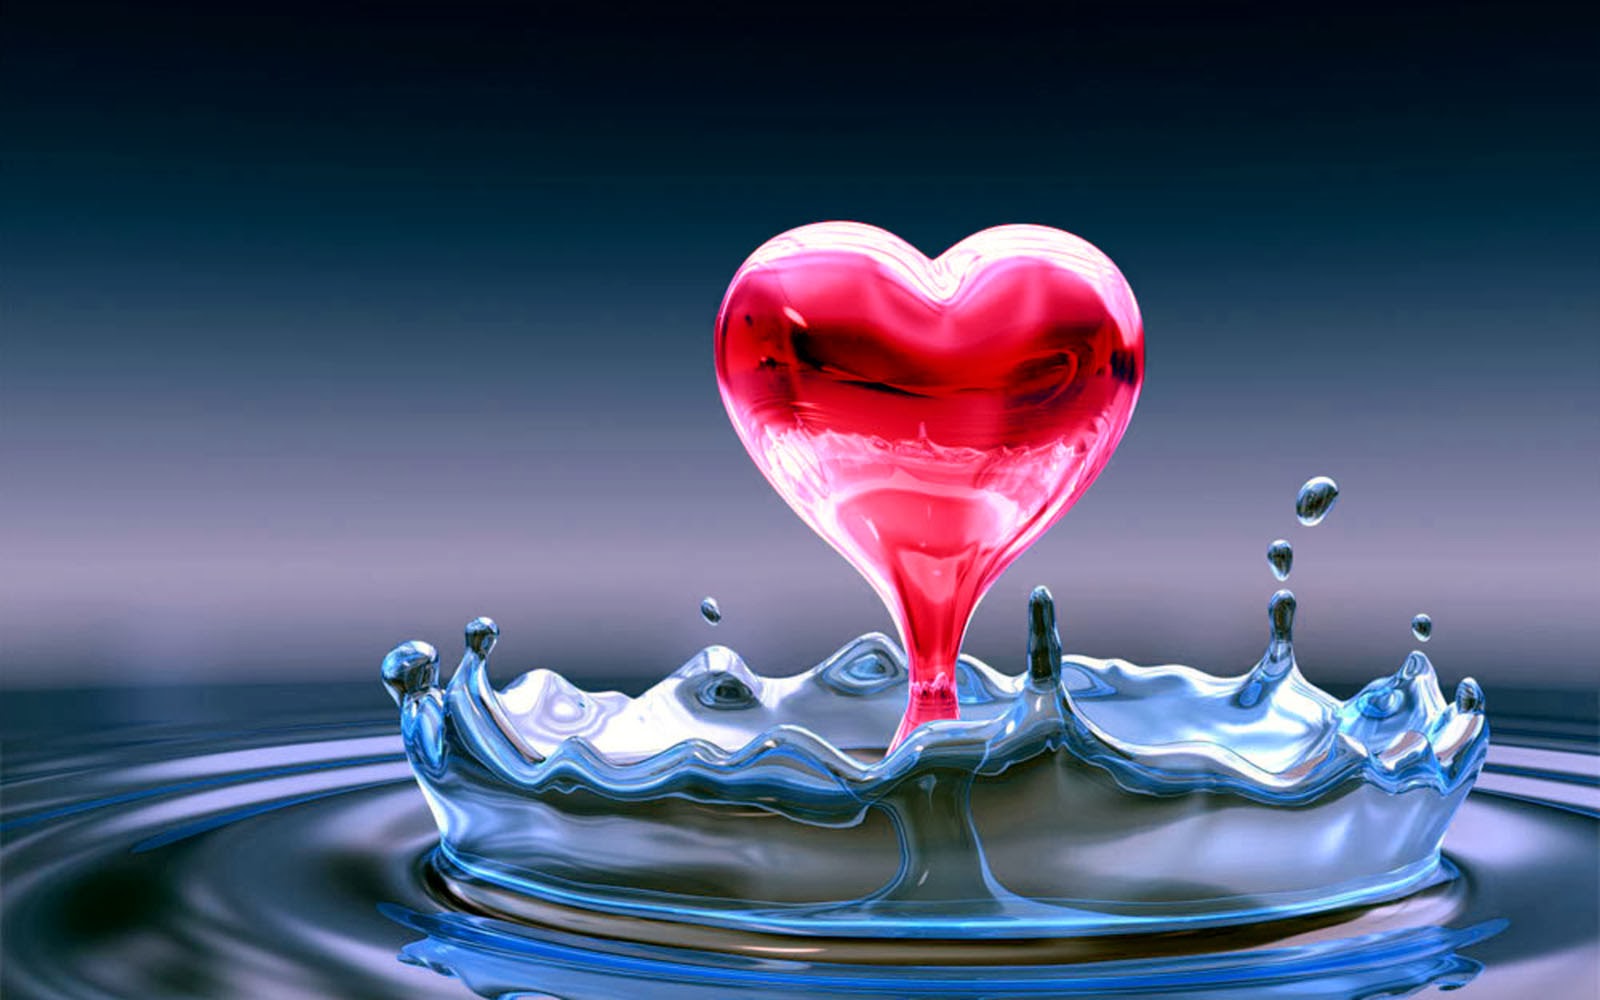 download di sfondi hd amore per android,acqua,amore,cuore,liquido,san valentino